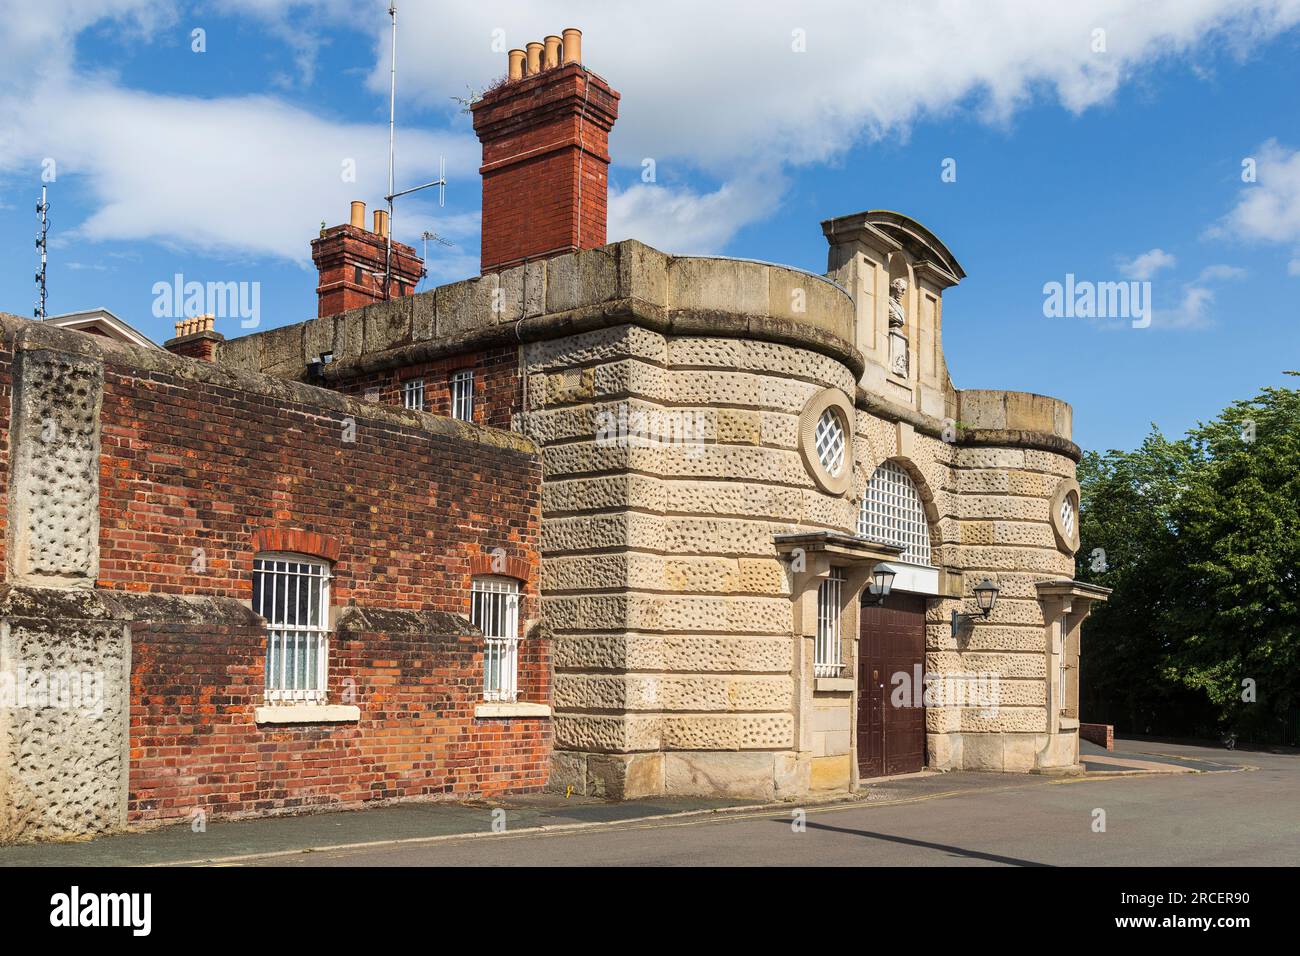 HM prison Shrewsbury, démilitarisée en 2013 et maintenant une attraction touristique, Shrewsbury, Shropshire, Royaume-Uni Banque D'Images